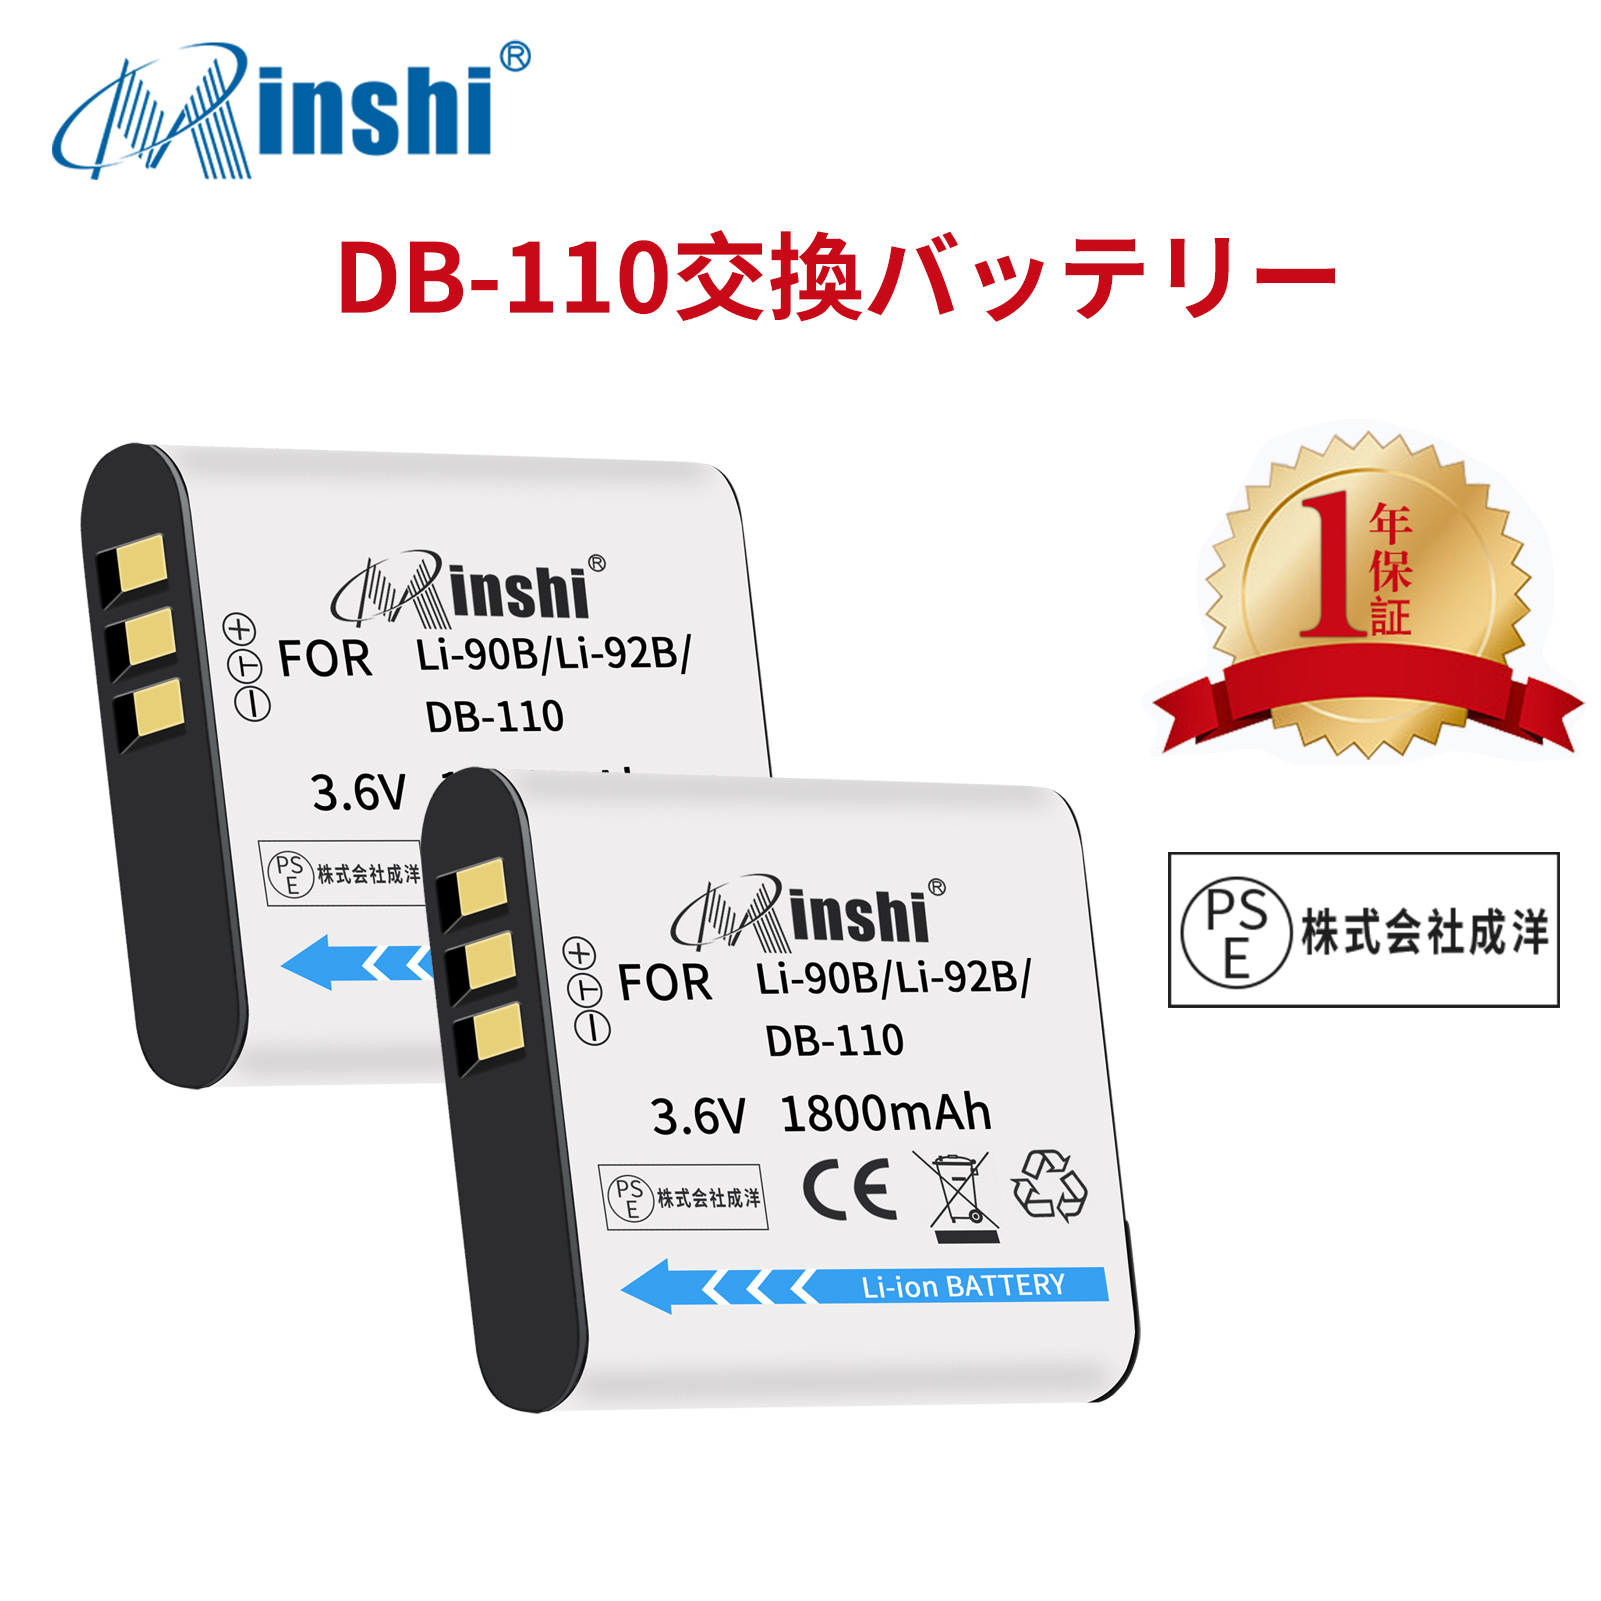 【２個セット】minshi OLYMPUS Stylus SH-3 【1800mAh 3.6V】PSE認定済 高品質LI-92B LI-90B互換バッテリーPHB